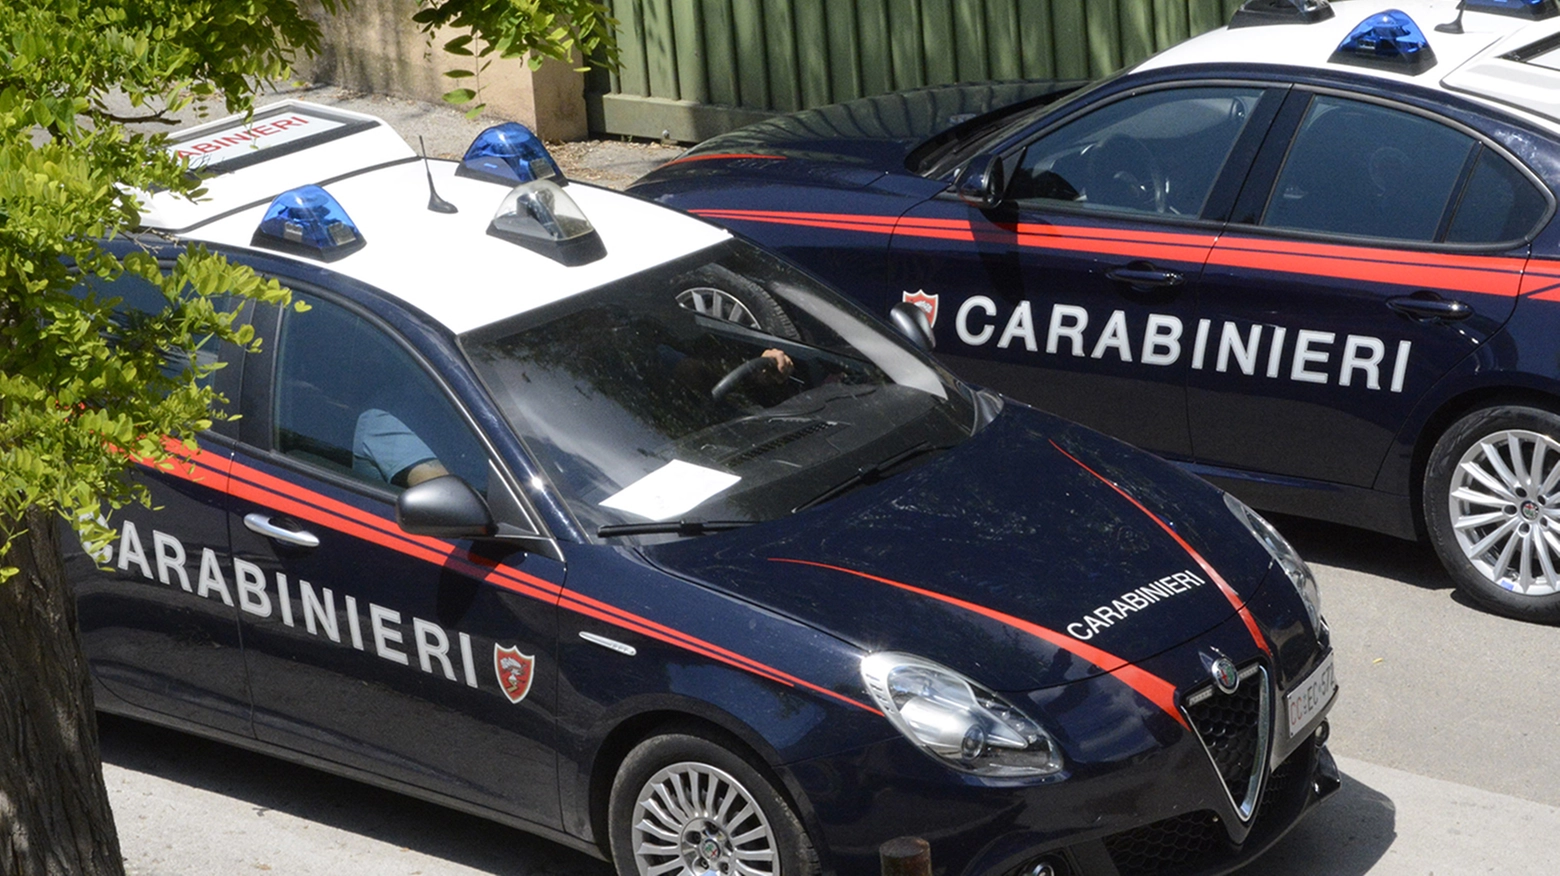 Ad arrestare il ricercato sono stati i carabinieri